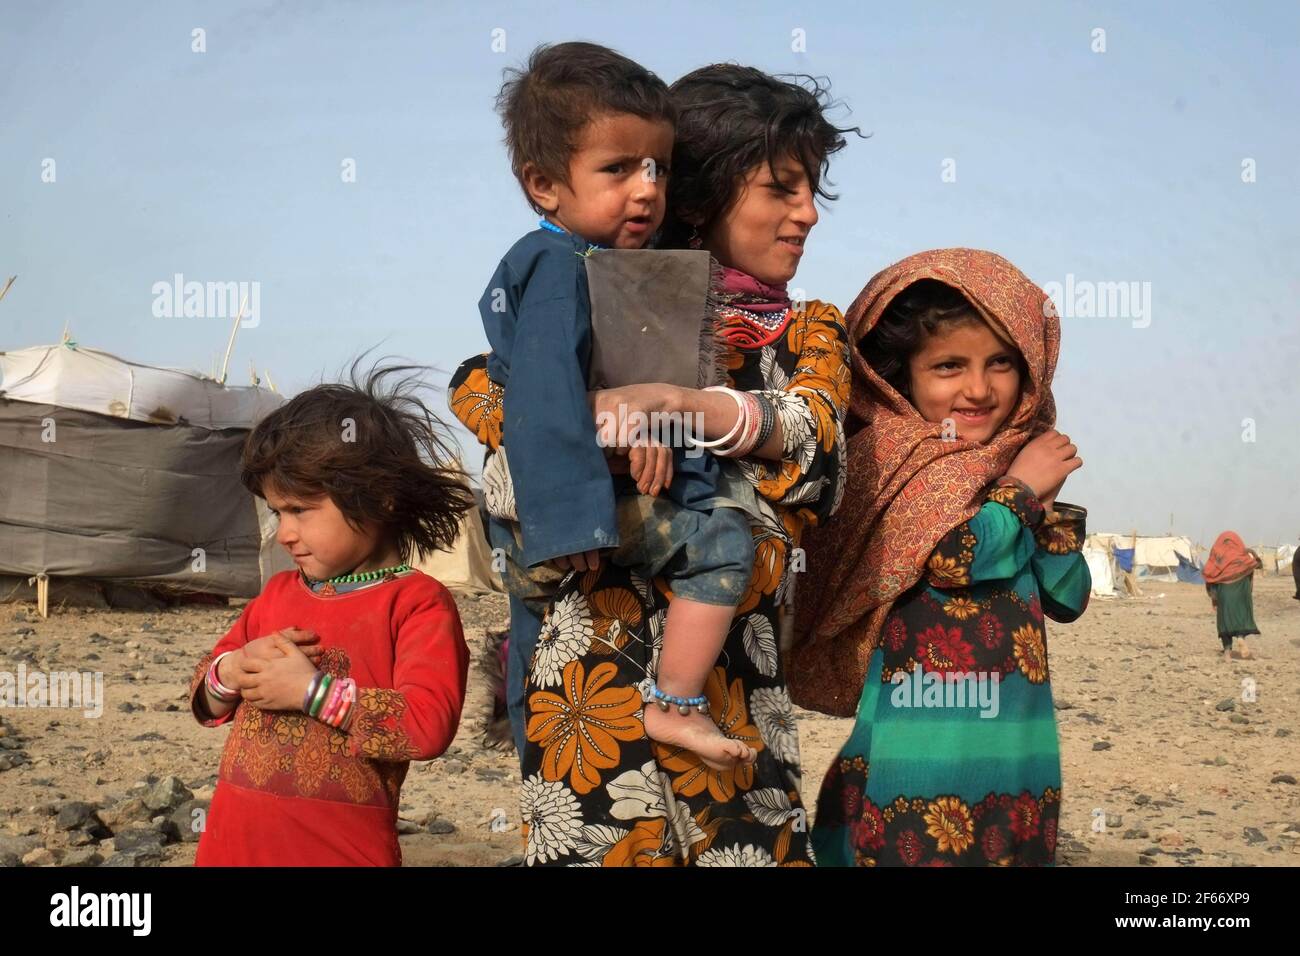 Kandahar, Afghanistan. März 2021, 30th. Afghanische Kinder warten auf Polio-Impfstoff während einer Anti-Polio-Impfkampagne im Panjwai-Distrikt in der Provinz Kandahar im Süden Afghanistans, 30. März 2021. Das afghanische Gesundheitsministerium hat am Montag eine landesweite Kampagne gestartet, um 9,6 Millionen Kindern unter fünf Jahren Impfdosen für Polio zu verabreichen. Quelle: Sanaullah Seiam/Xinhua/Alamy Live News Stockfoto